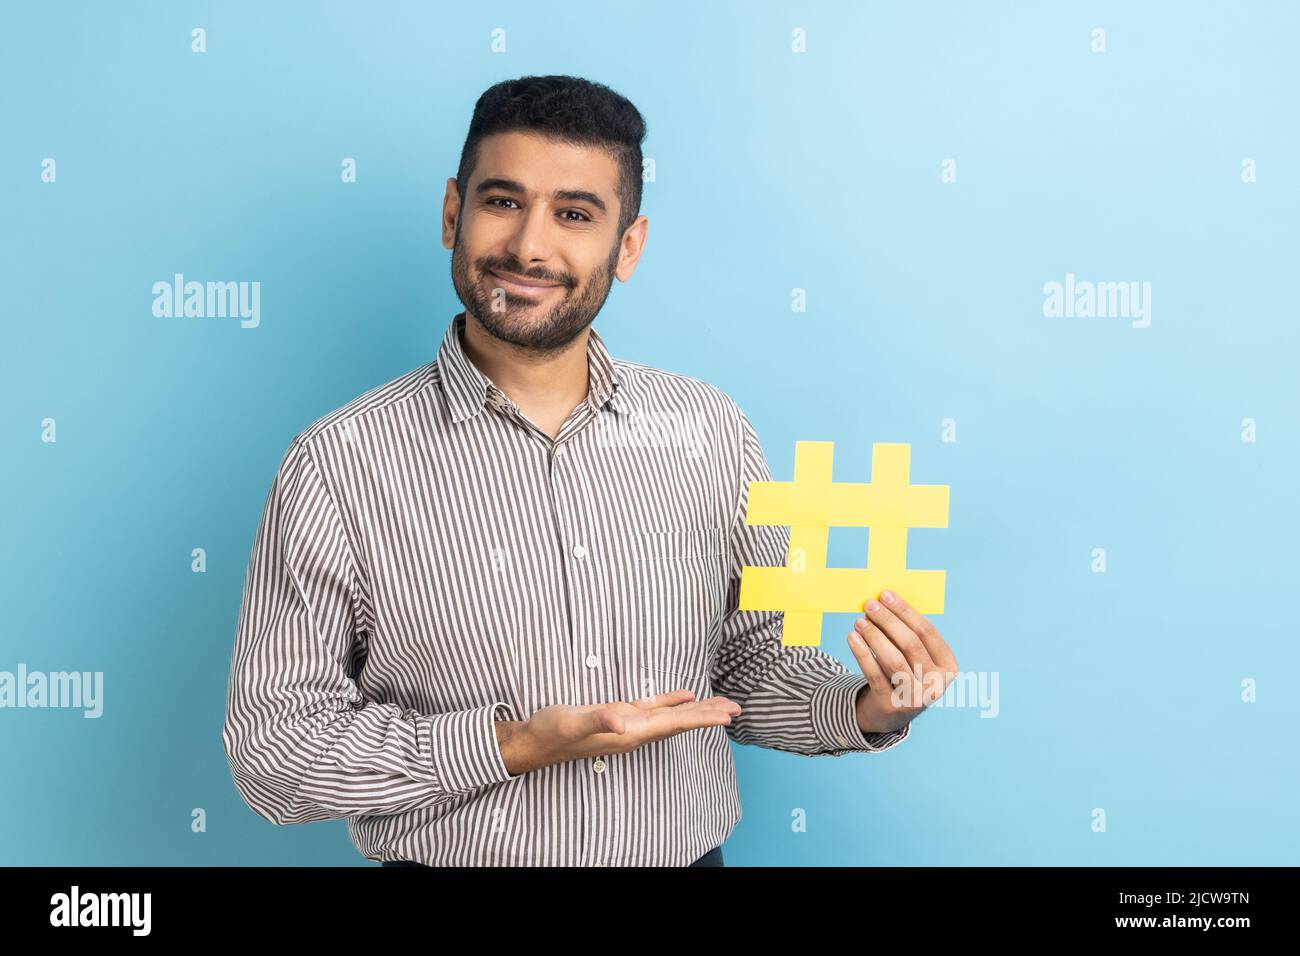 Portrait d'un homme d'affaires barbu souriant présentant un hashtag jaune, tagging blog tendances, sujet viral dans le réseau social, porter une chemise rayée. Studio d'intérieur isolé sur fond bleu. Banque D'Images